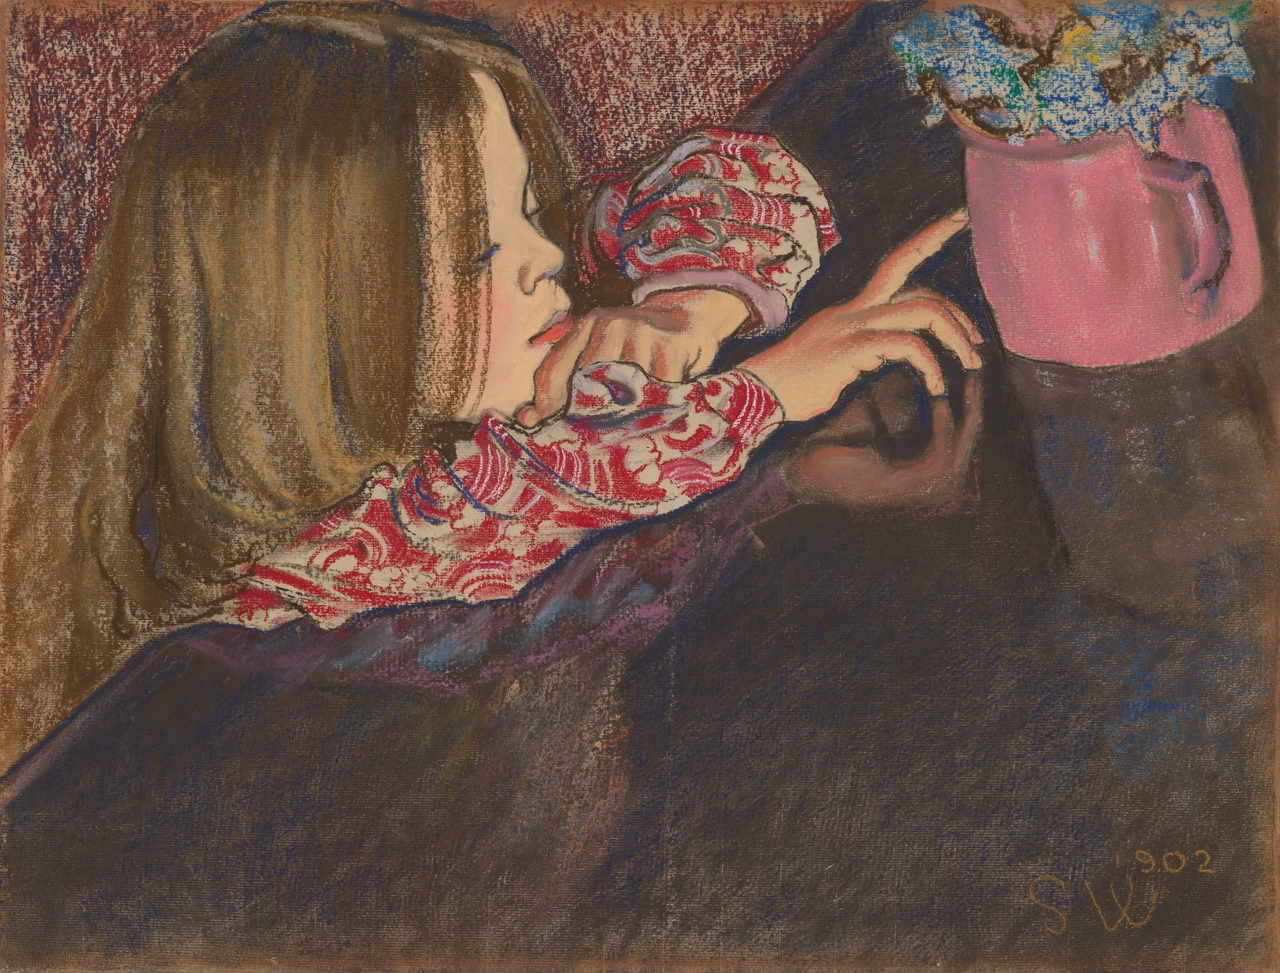 Obraz Stanisława Wyspiańskiego (kopię) który przedstawia dziewczynkę z wazonem w którym są kwiaty. Dziewczynka spogląda na wazon